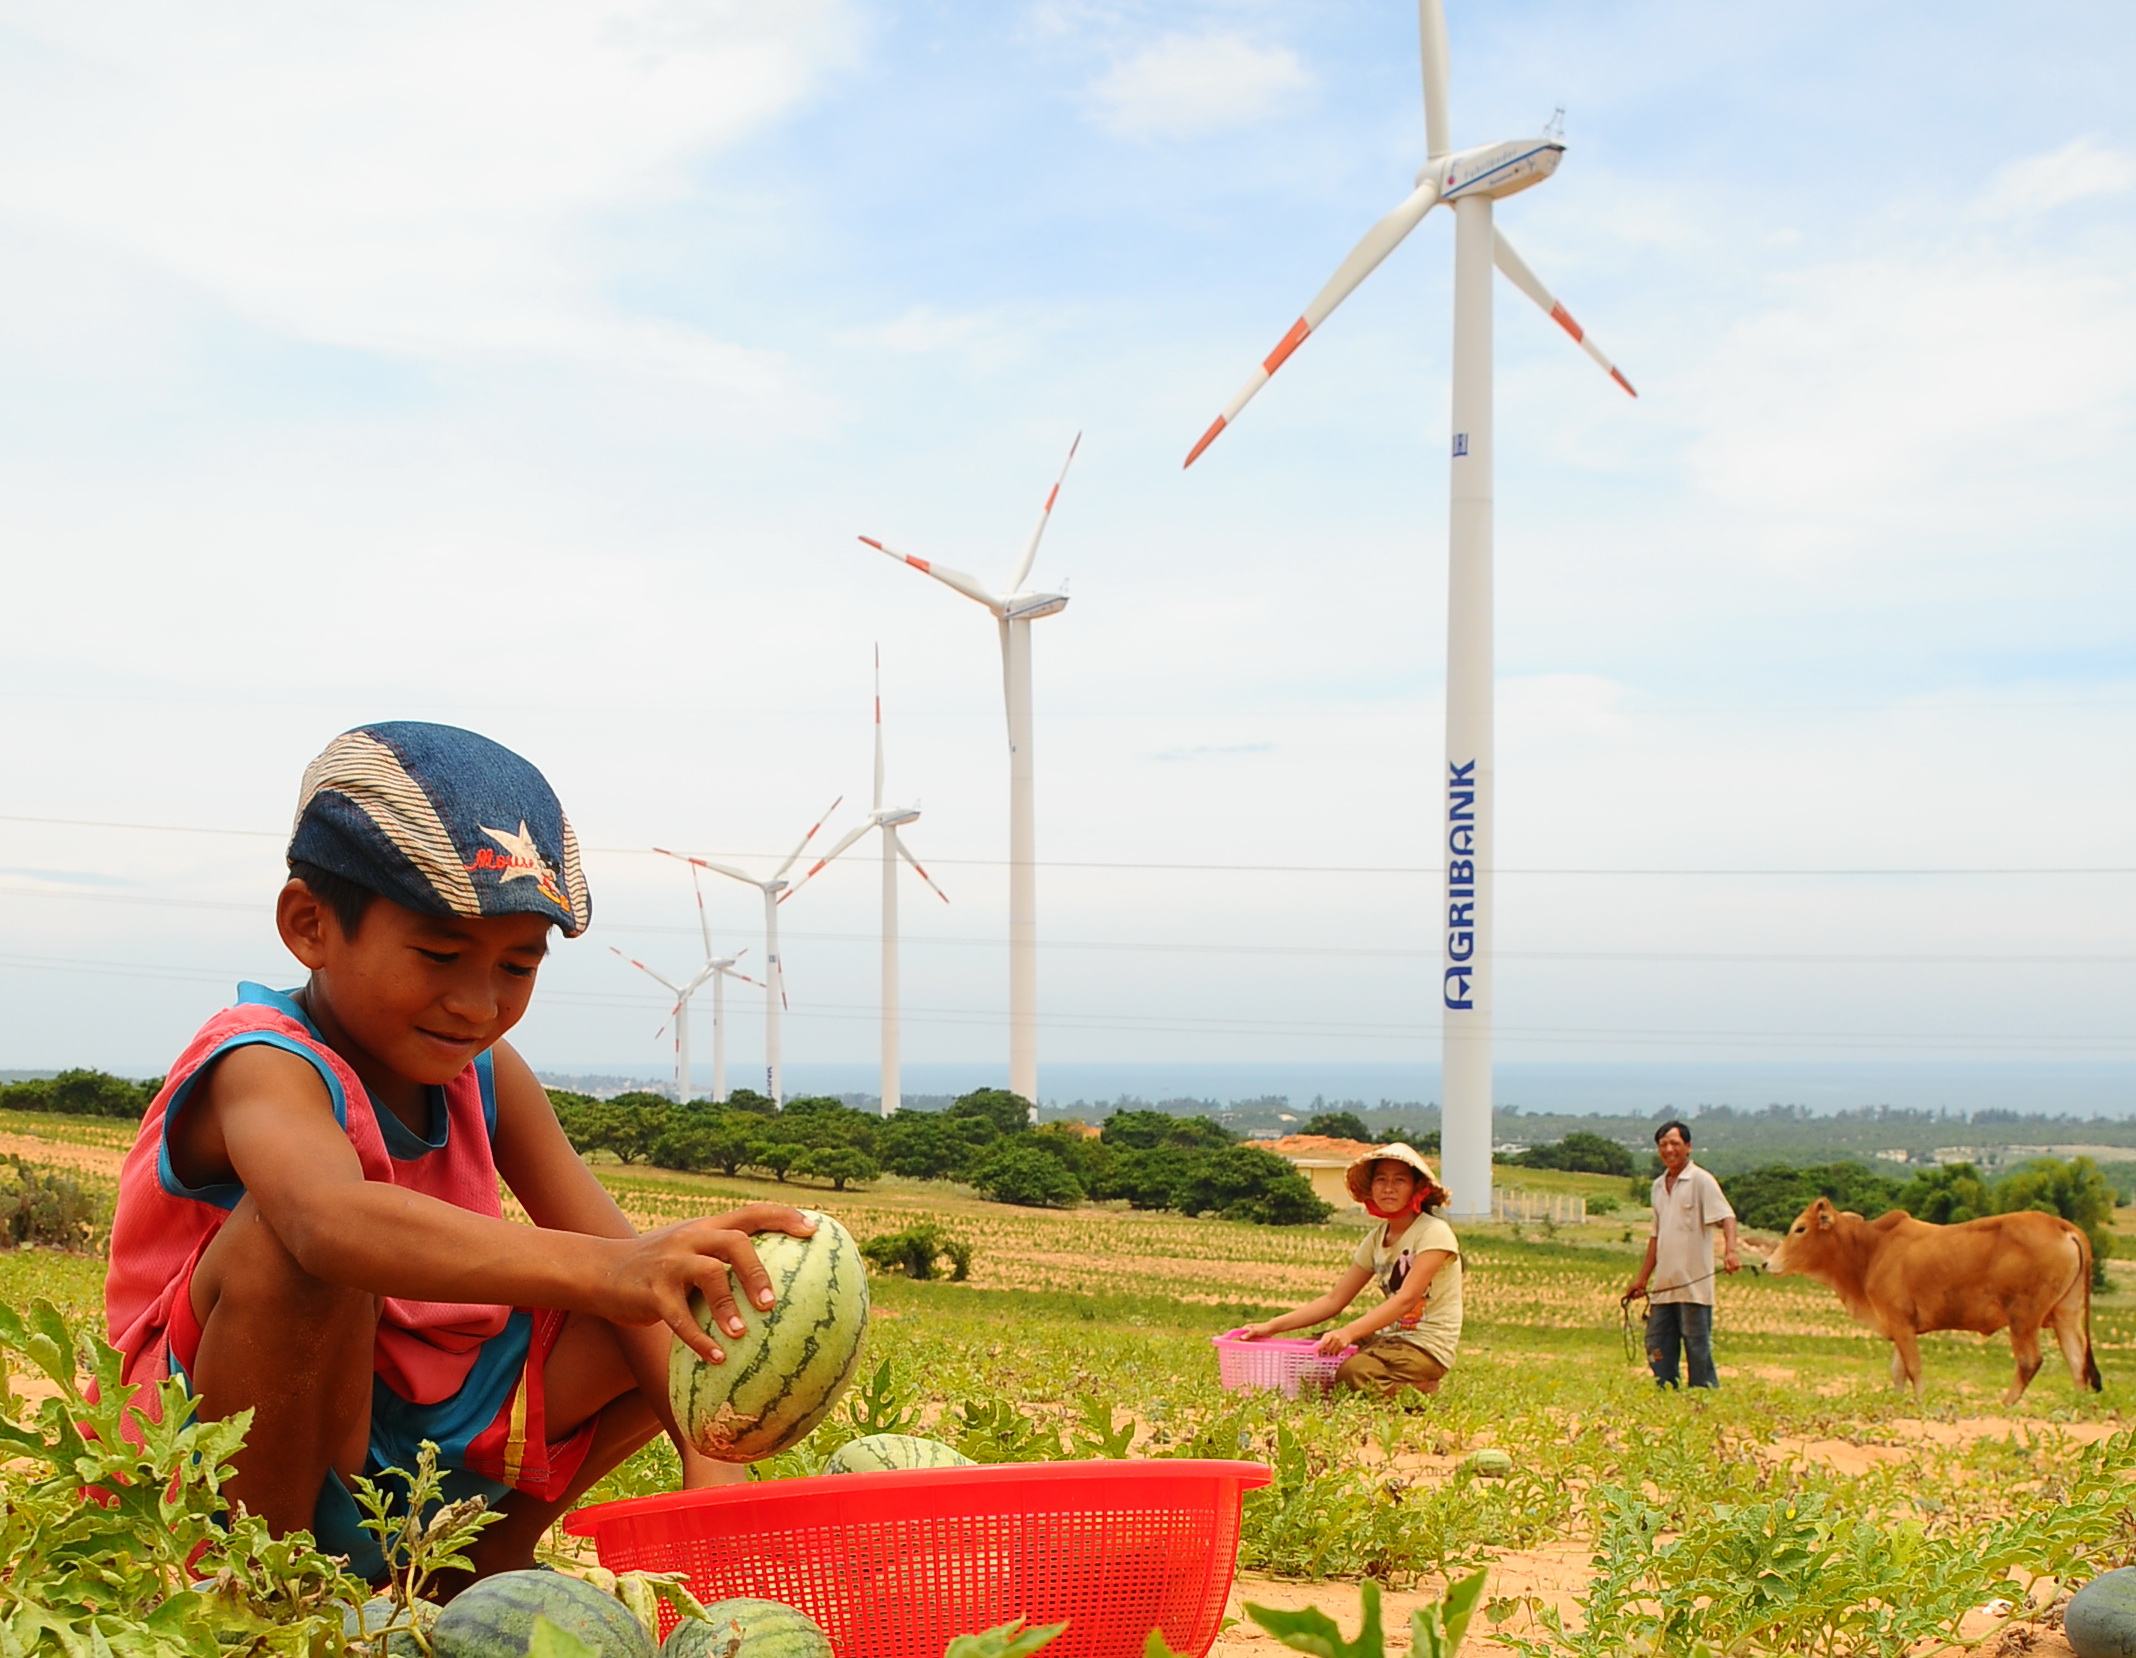 Người nước ngoài khuyên Việt Nam phát triển năng lượng sạch